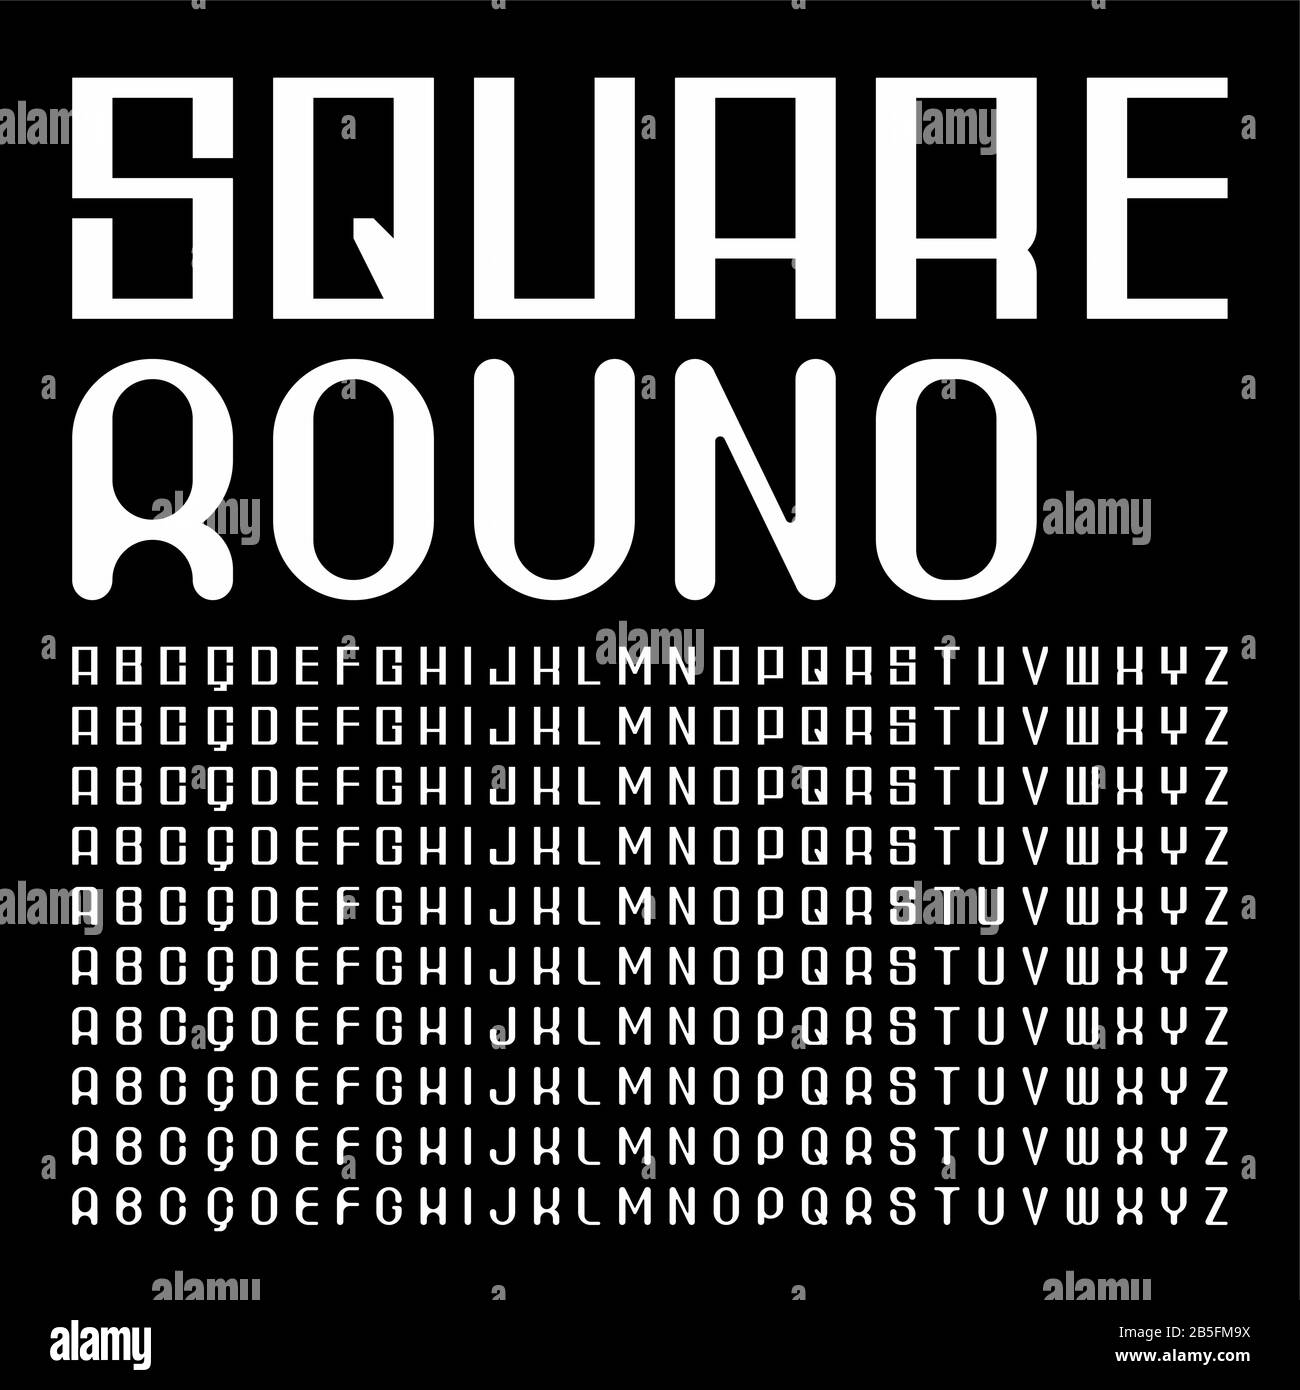 Dieci Livelli Da Quadrato A Angolo Arrotondato Standard Sans Serif Font (Tipo Vettore). Tipografia Maiuscola. Illustrazione Vettoriale